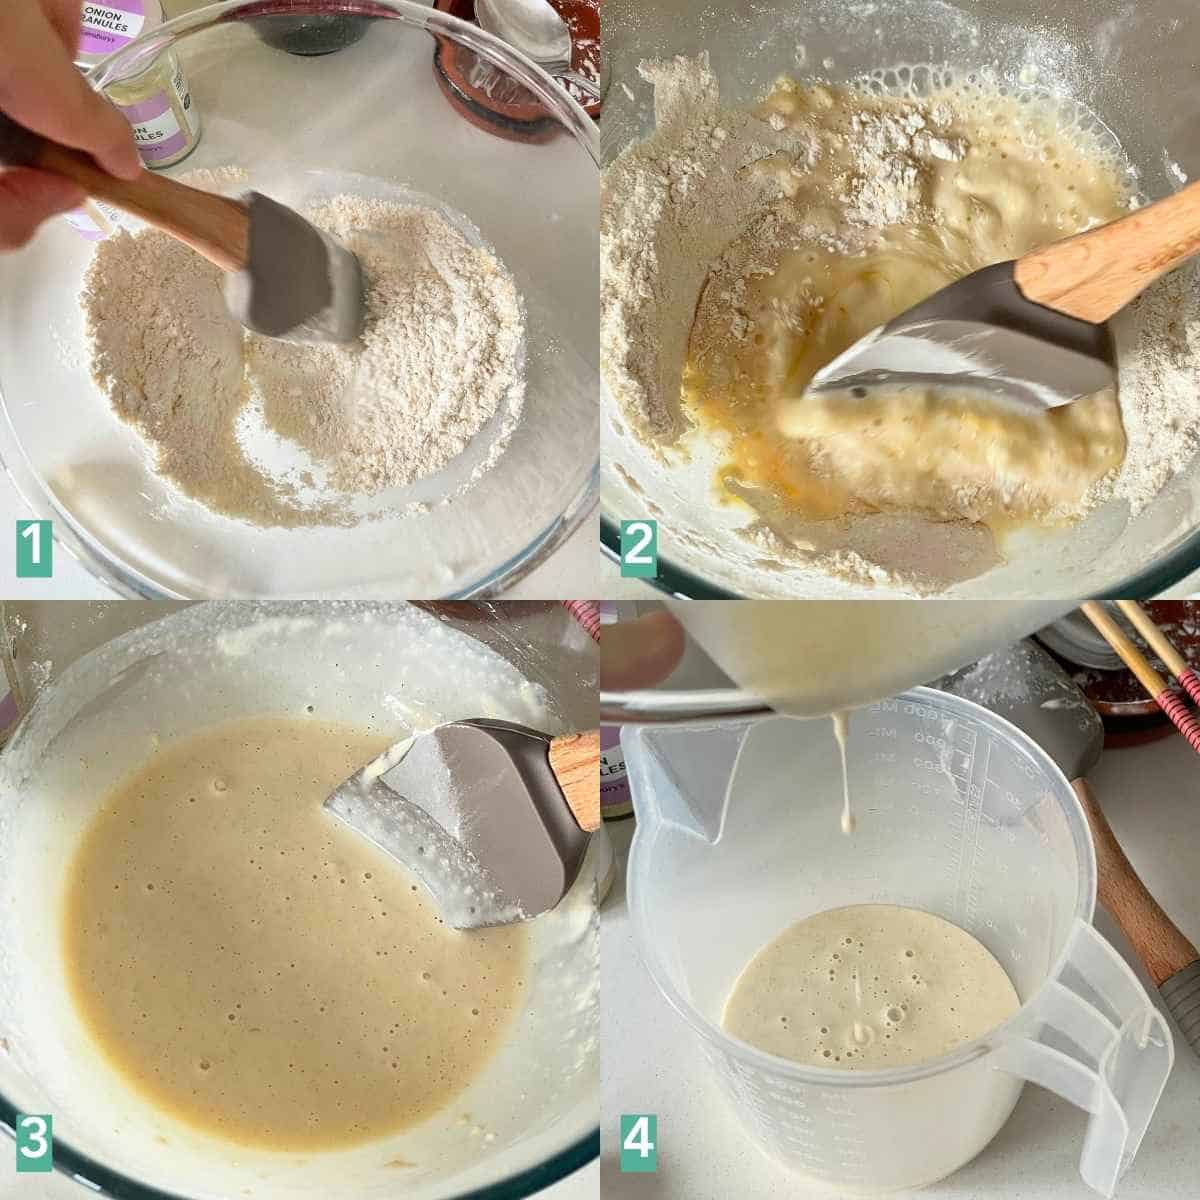 How to make Korean pancake batter